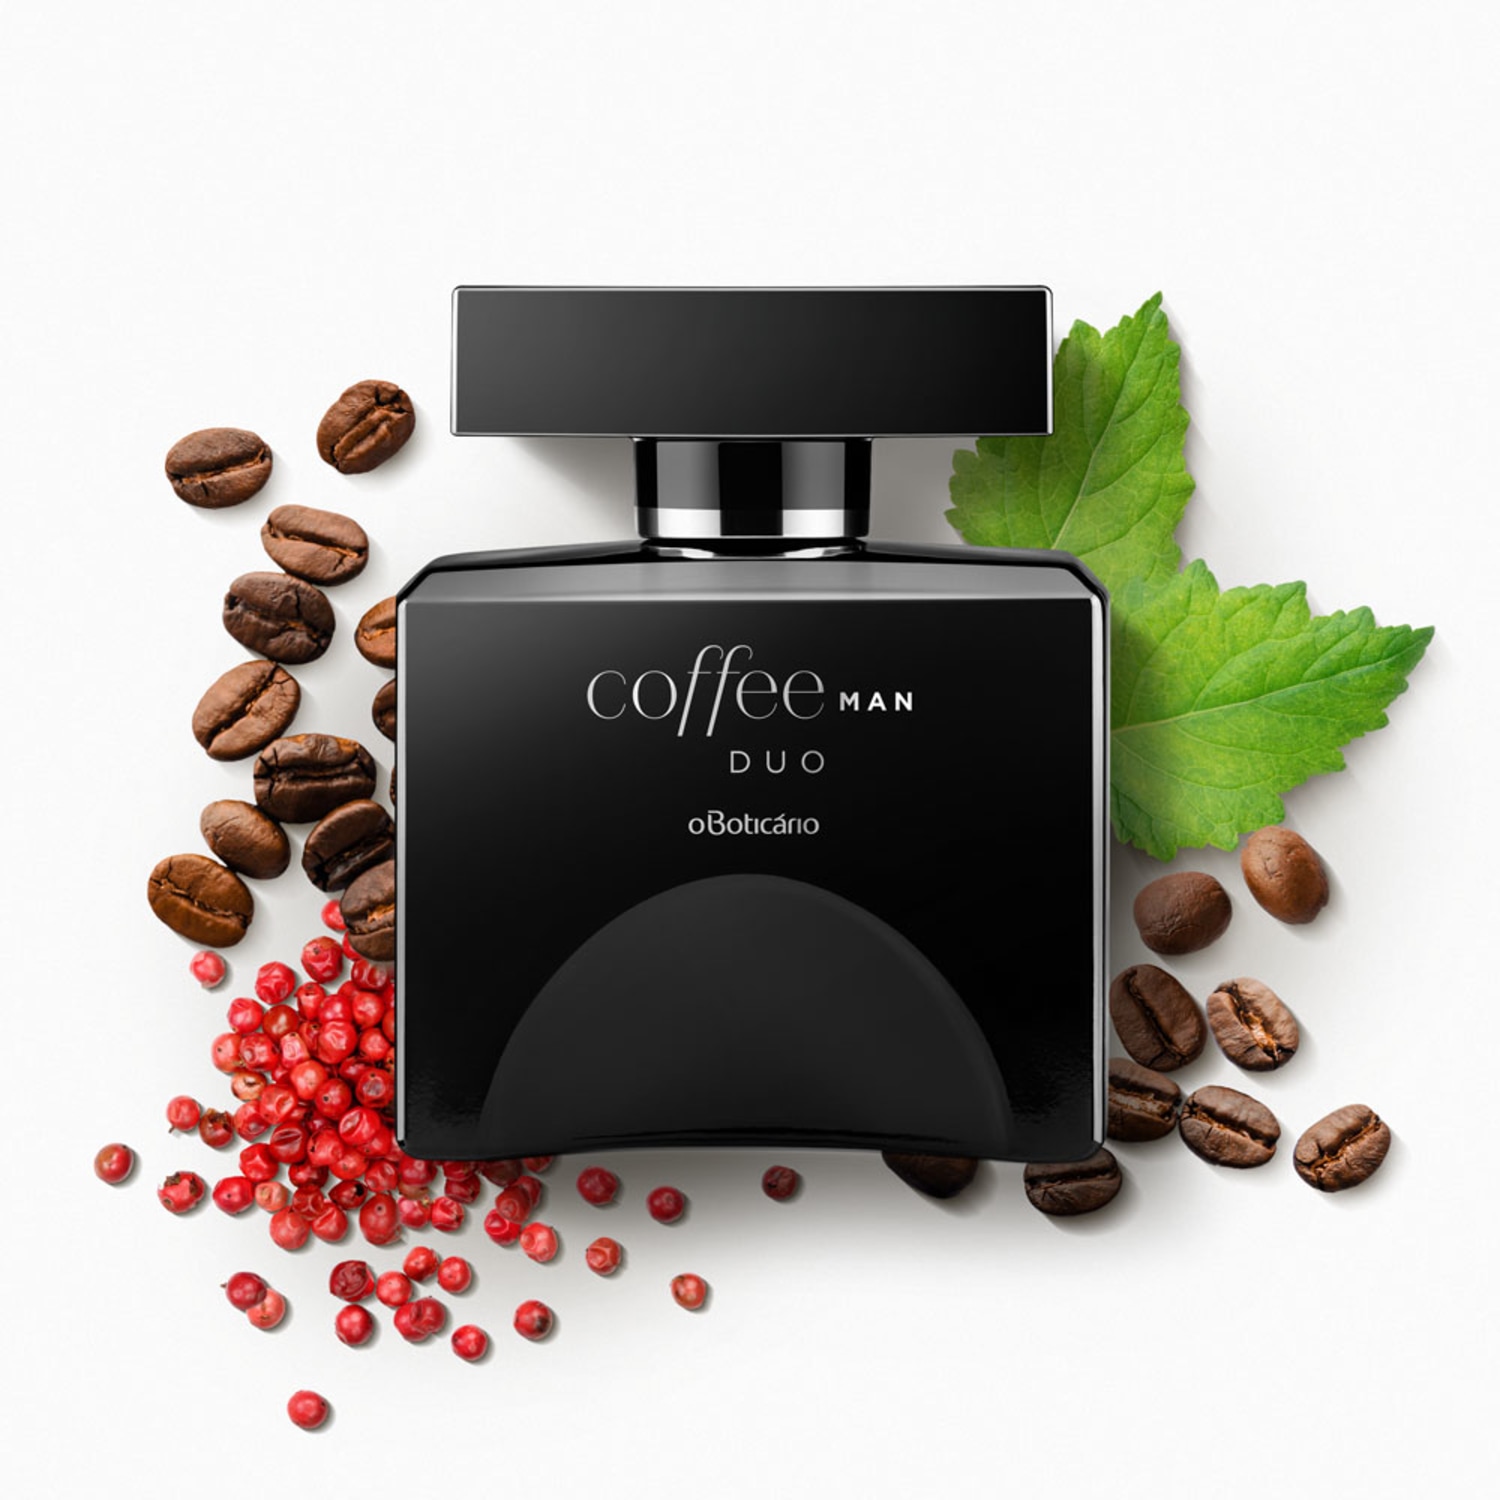 Dayse presentes - Coffee Duo Woman de O Boticário é um perfume